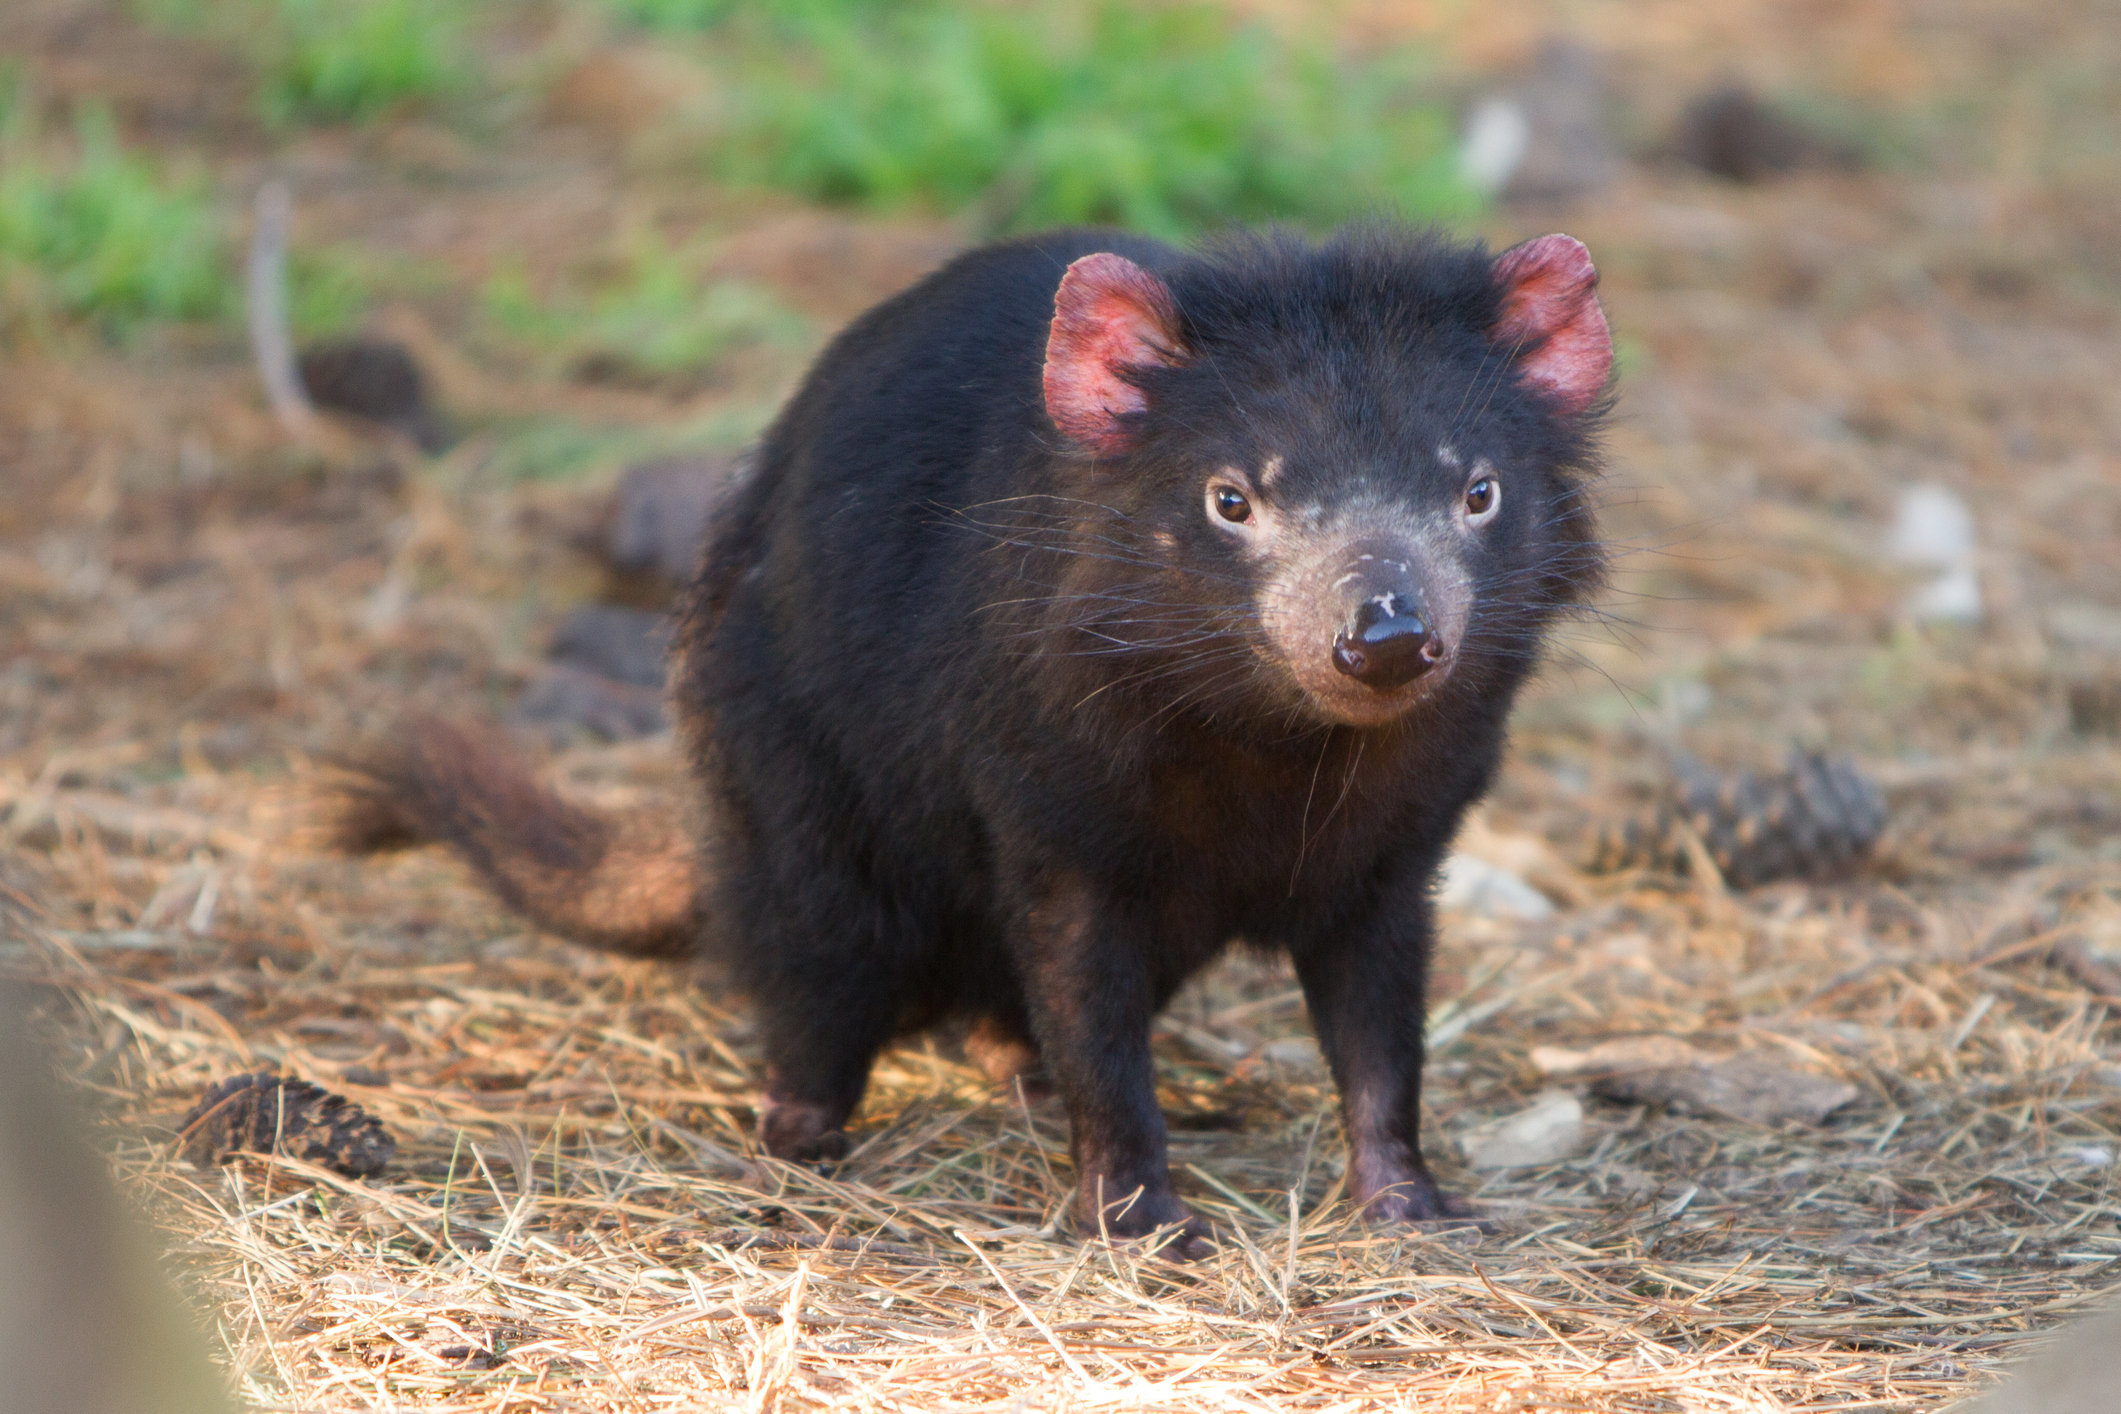 Tasmanian devil facial tumor image